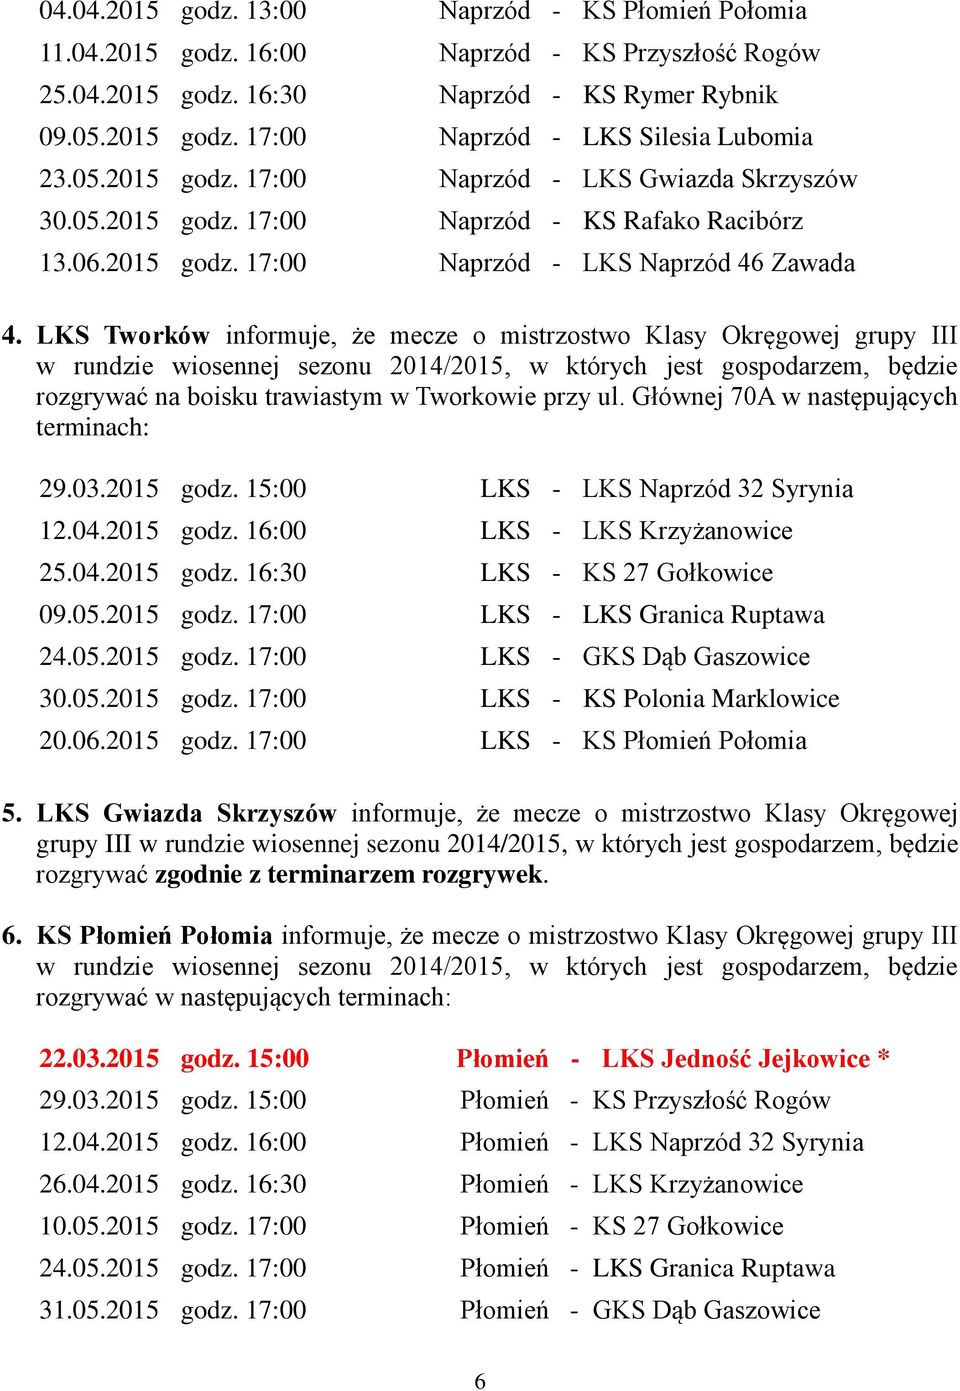 LKS Tworków informuje, że mecze o mistrzostwo Klasy Okręgowej grupy III w rundzie wiosennej sezonu 2014/2015, w których jest gospodarzem, będzie rozgrywać na boisku trawiastym w Tworkowie przy ul.